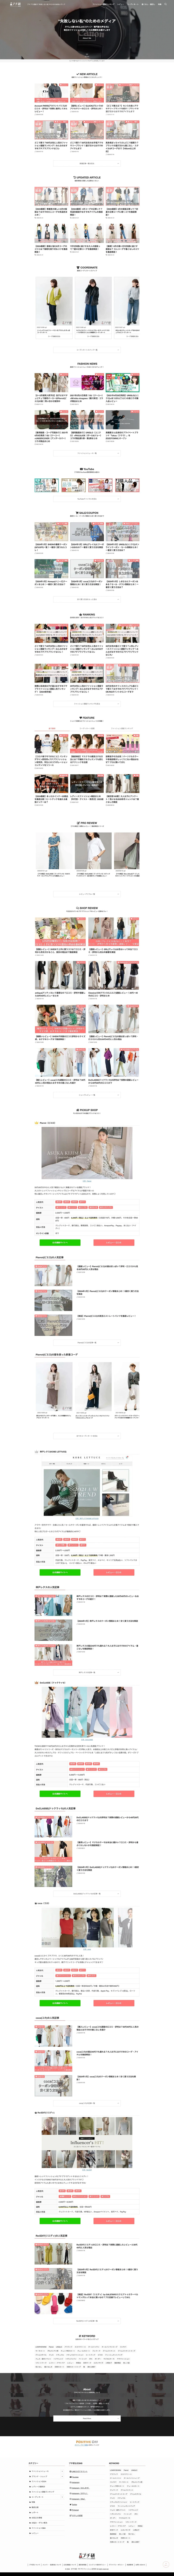 【プチ研】プチプラファッション研究所 | プチプラ通販で"失敗しない私"のためのWEBメディア